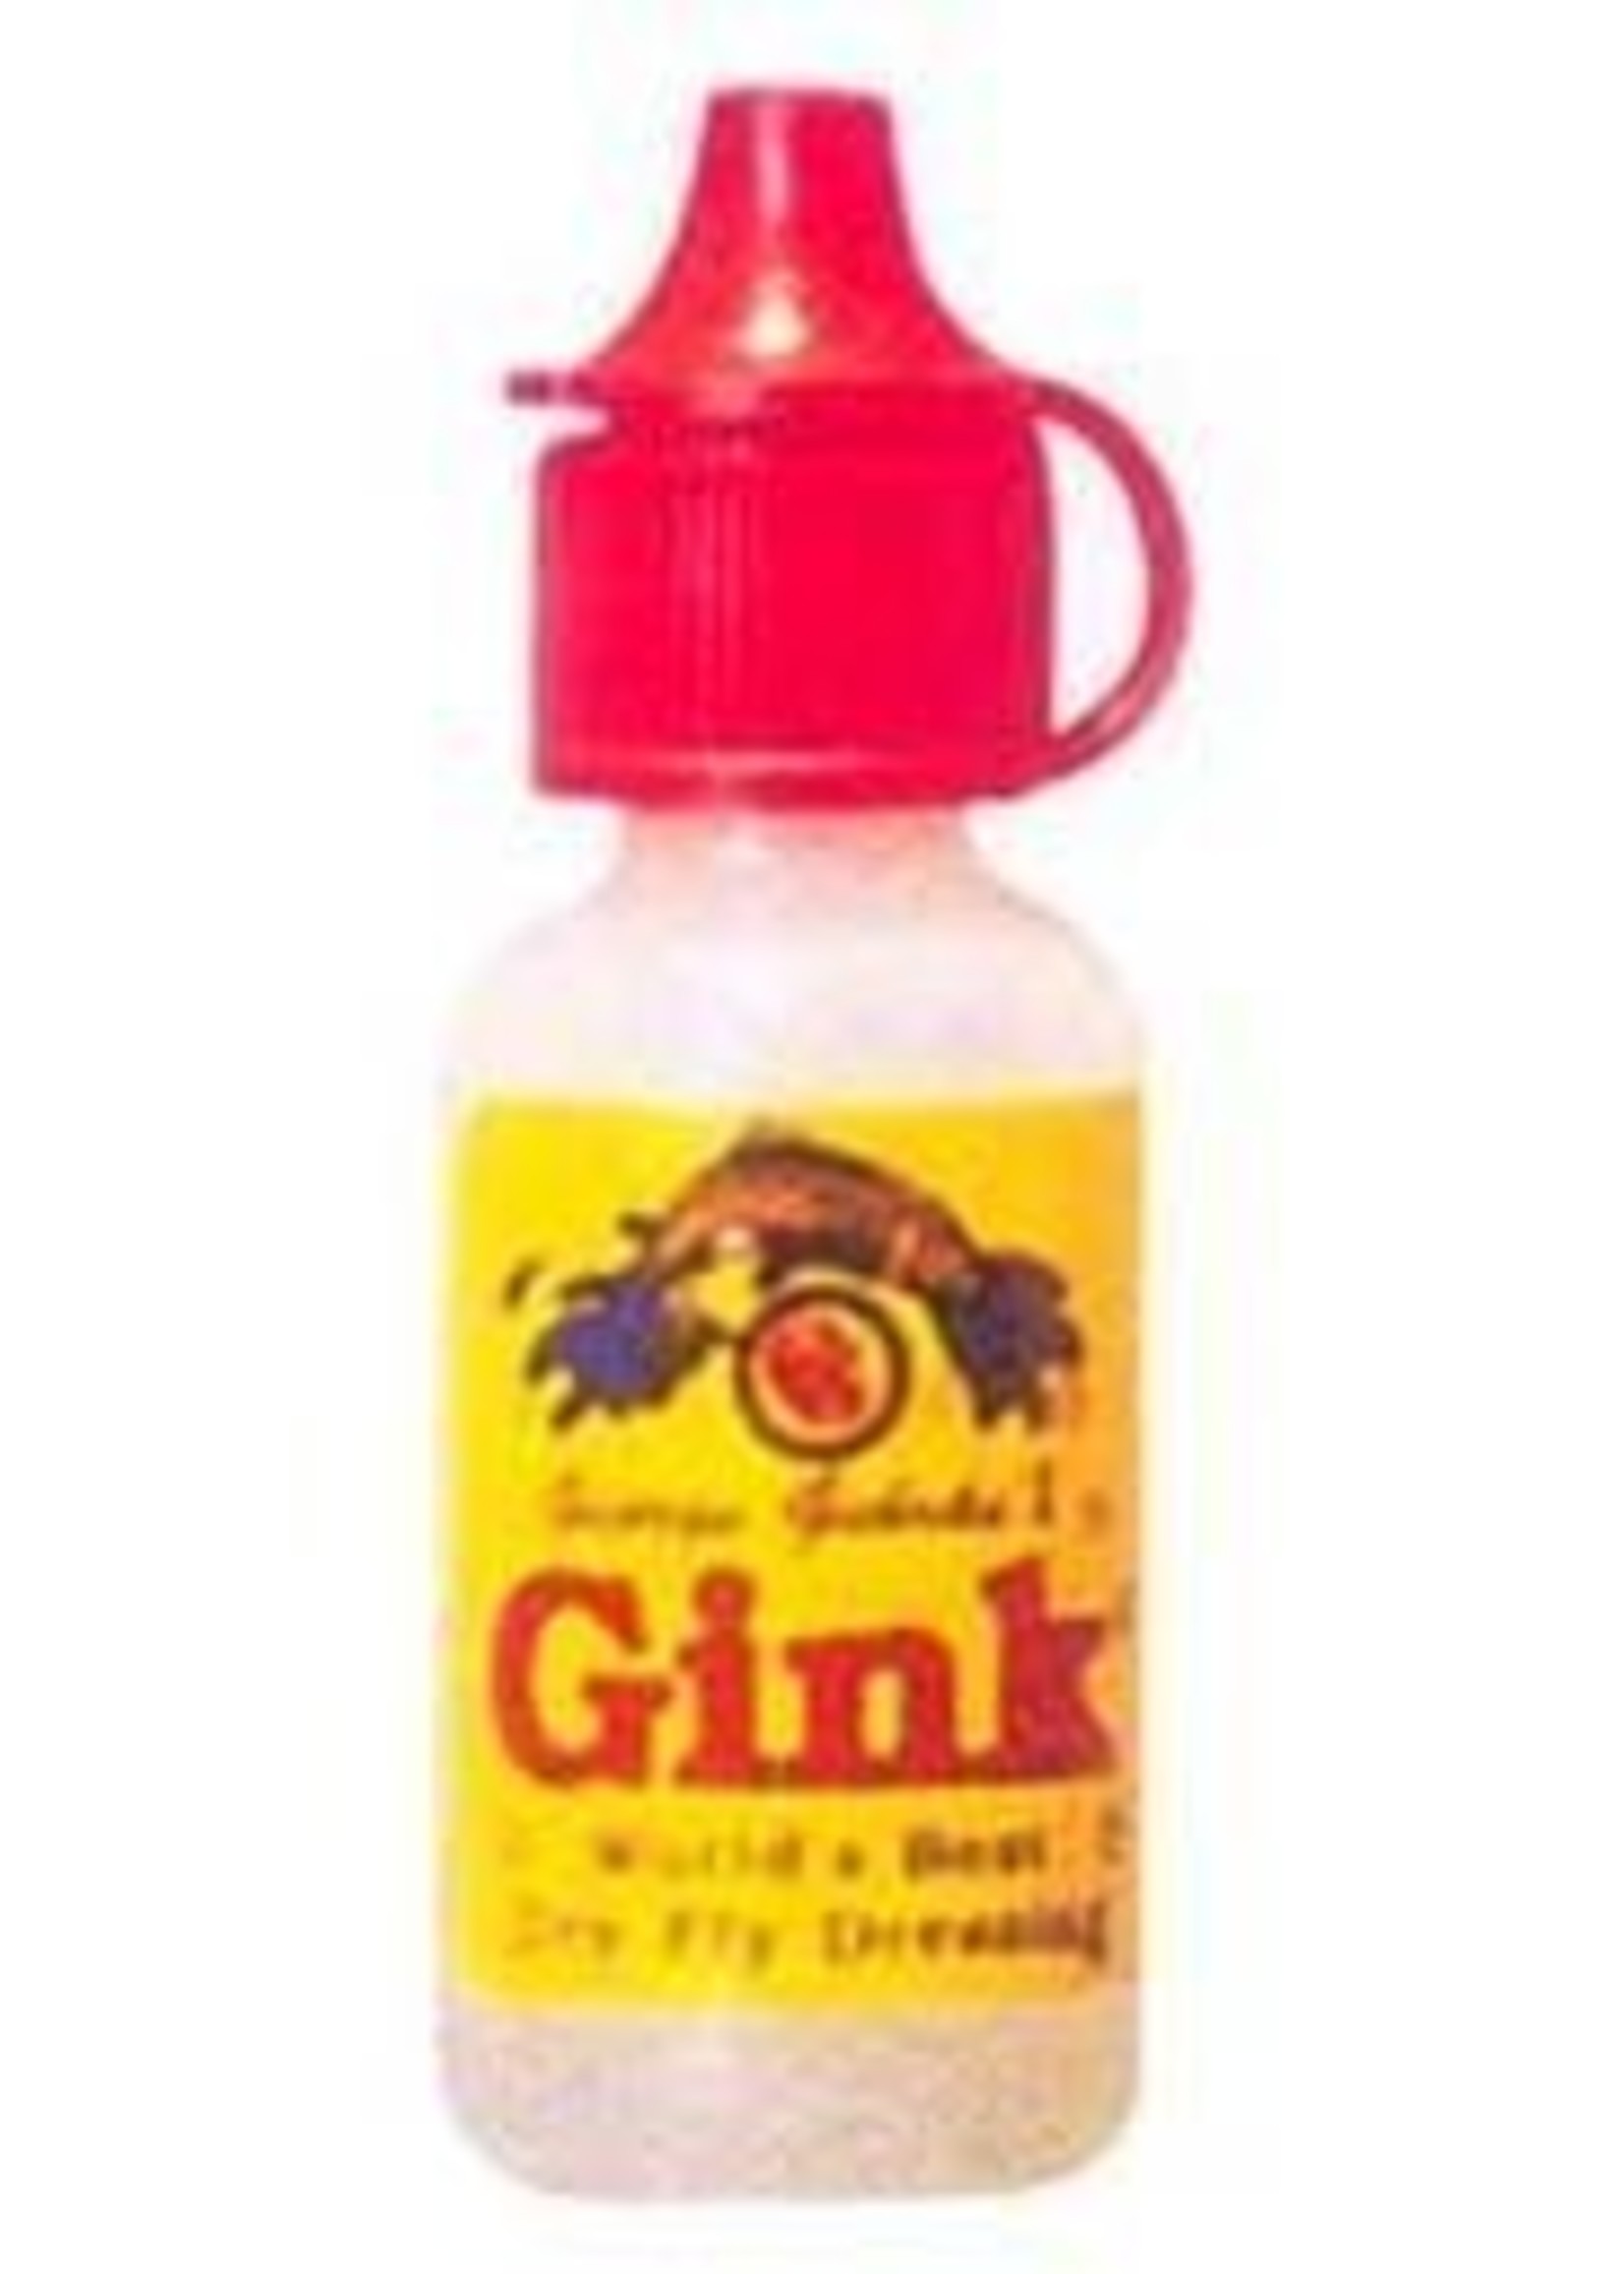 Gink Gel Floatant